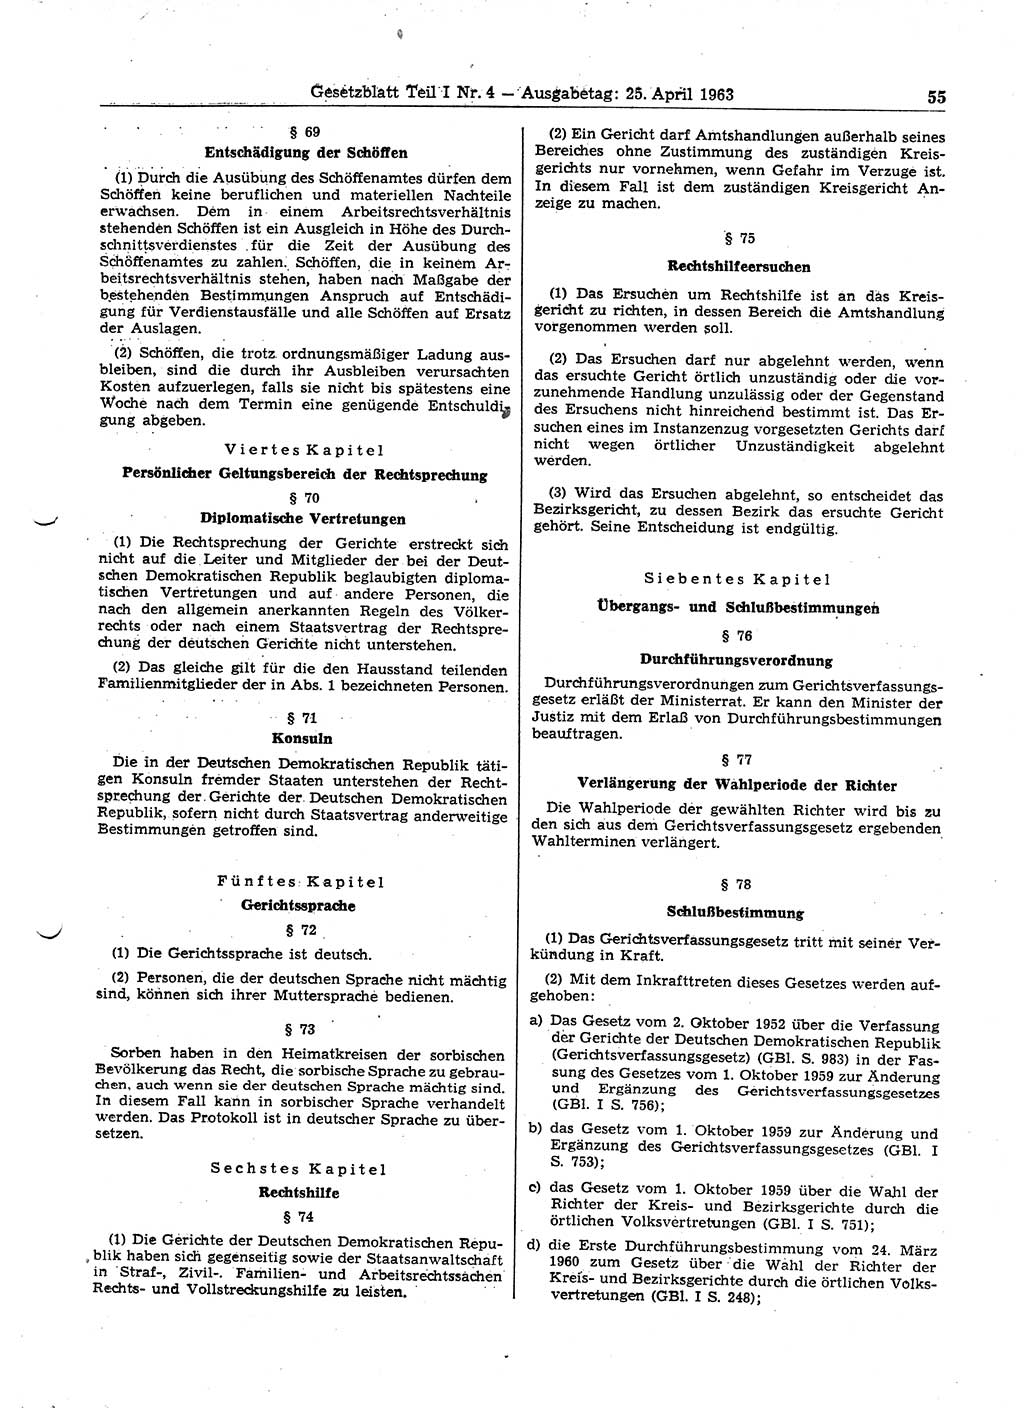 Gesetzblatt (GBl.) der Deutschen Demokratischen Republik (DDR) Teil Ⅰ 1963, Seite 55 (GBl. DDR Ⅰ 1963, S. 55)